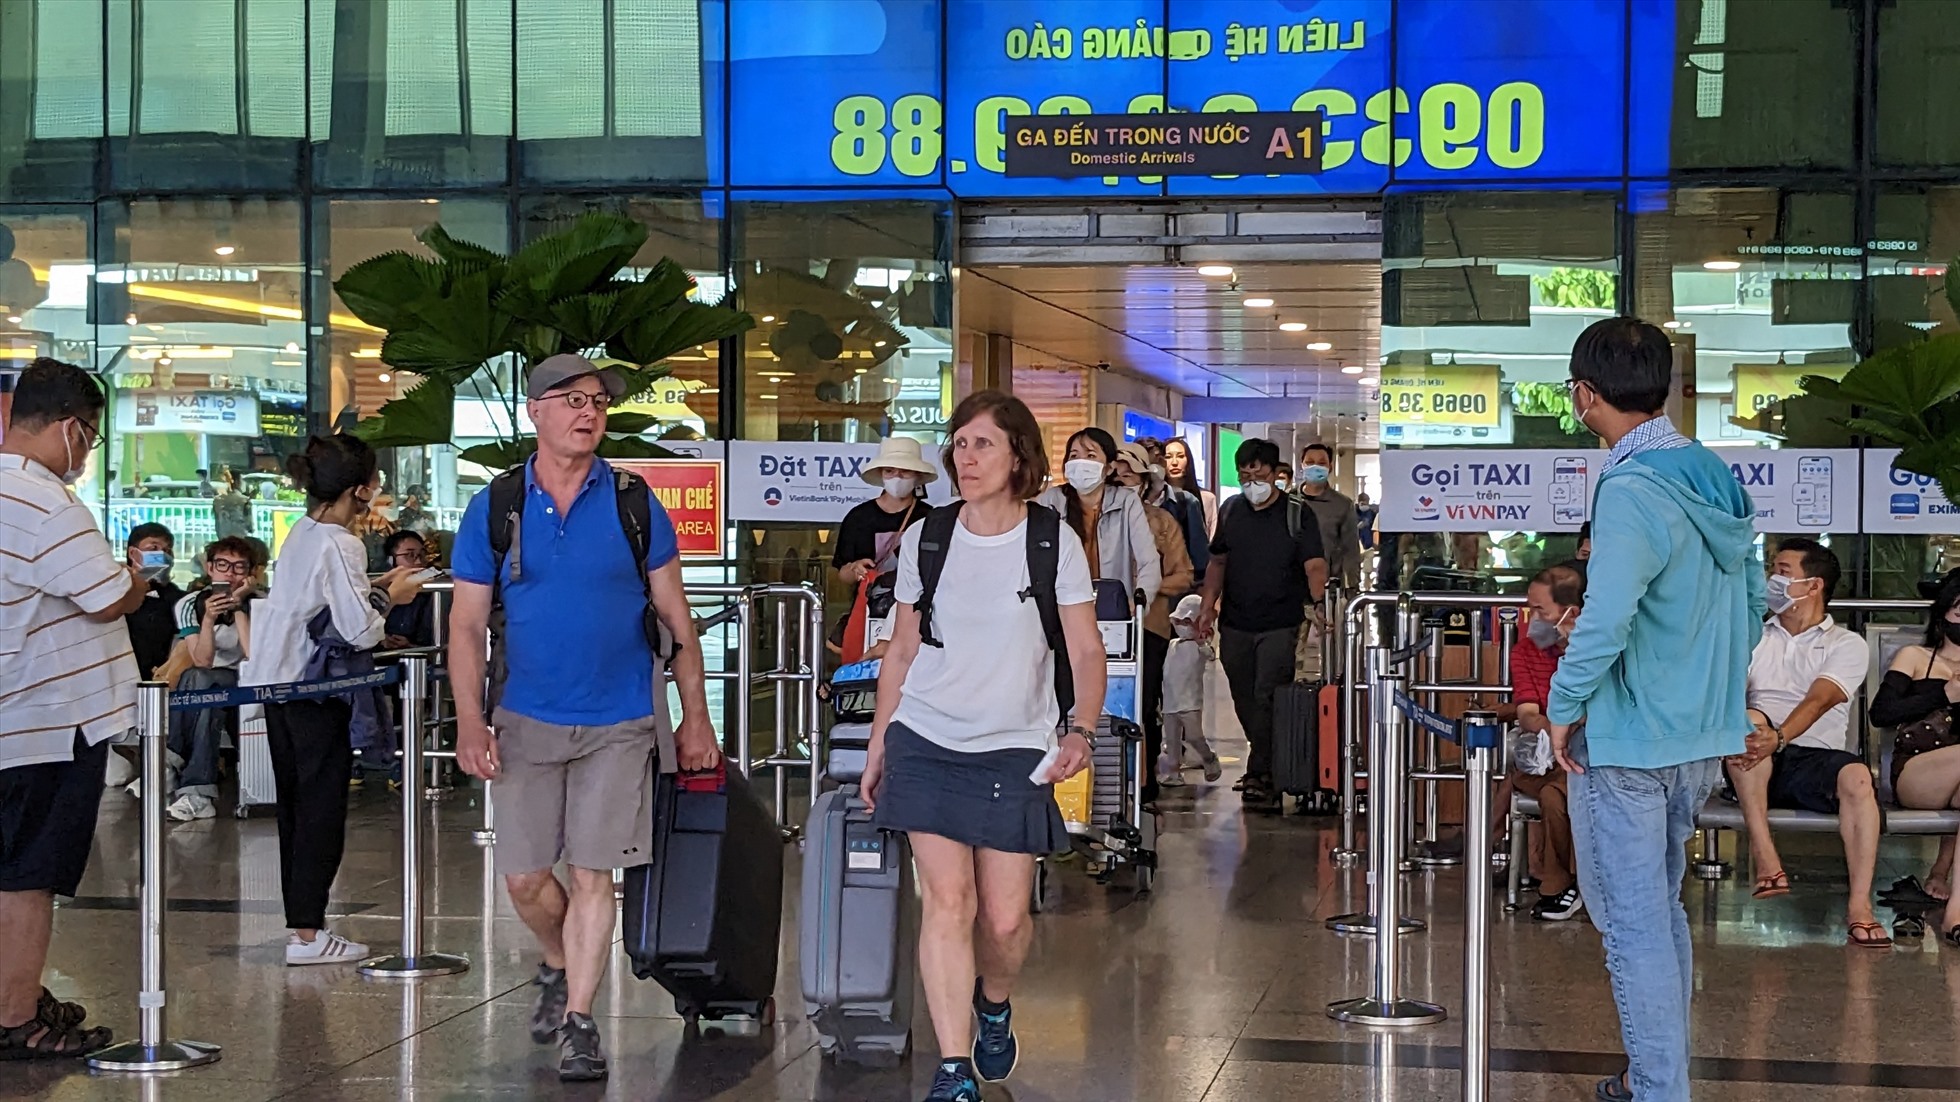 Ghi nhận tại khu vực ga đến trong nước sân bay Tân Sơn Nhất lúc nay, nhiều hành khách lựa chọn trở về TP Hồ Chí Minh sớm, tuy nhiên, không xảy ra tình trạng ùn ứ, quá tải. Dự kiến hôm nay (2.5), Cảng hàng không quốc tế Tân Sơn Nhất đón gần 130.000 lượt khách. Trong đó, gần 62.000 khách đi và gần 68.000 khách đến.